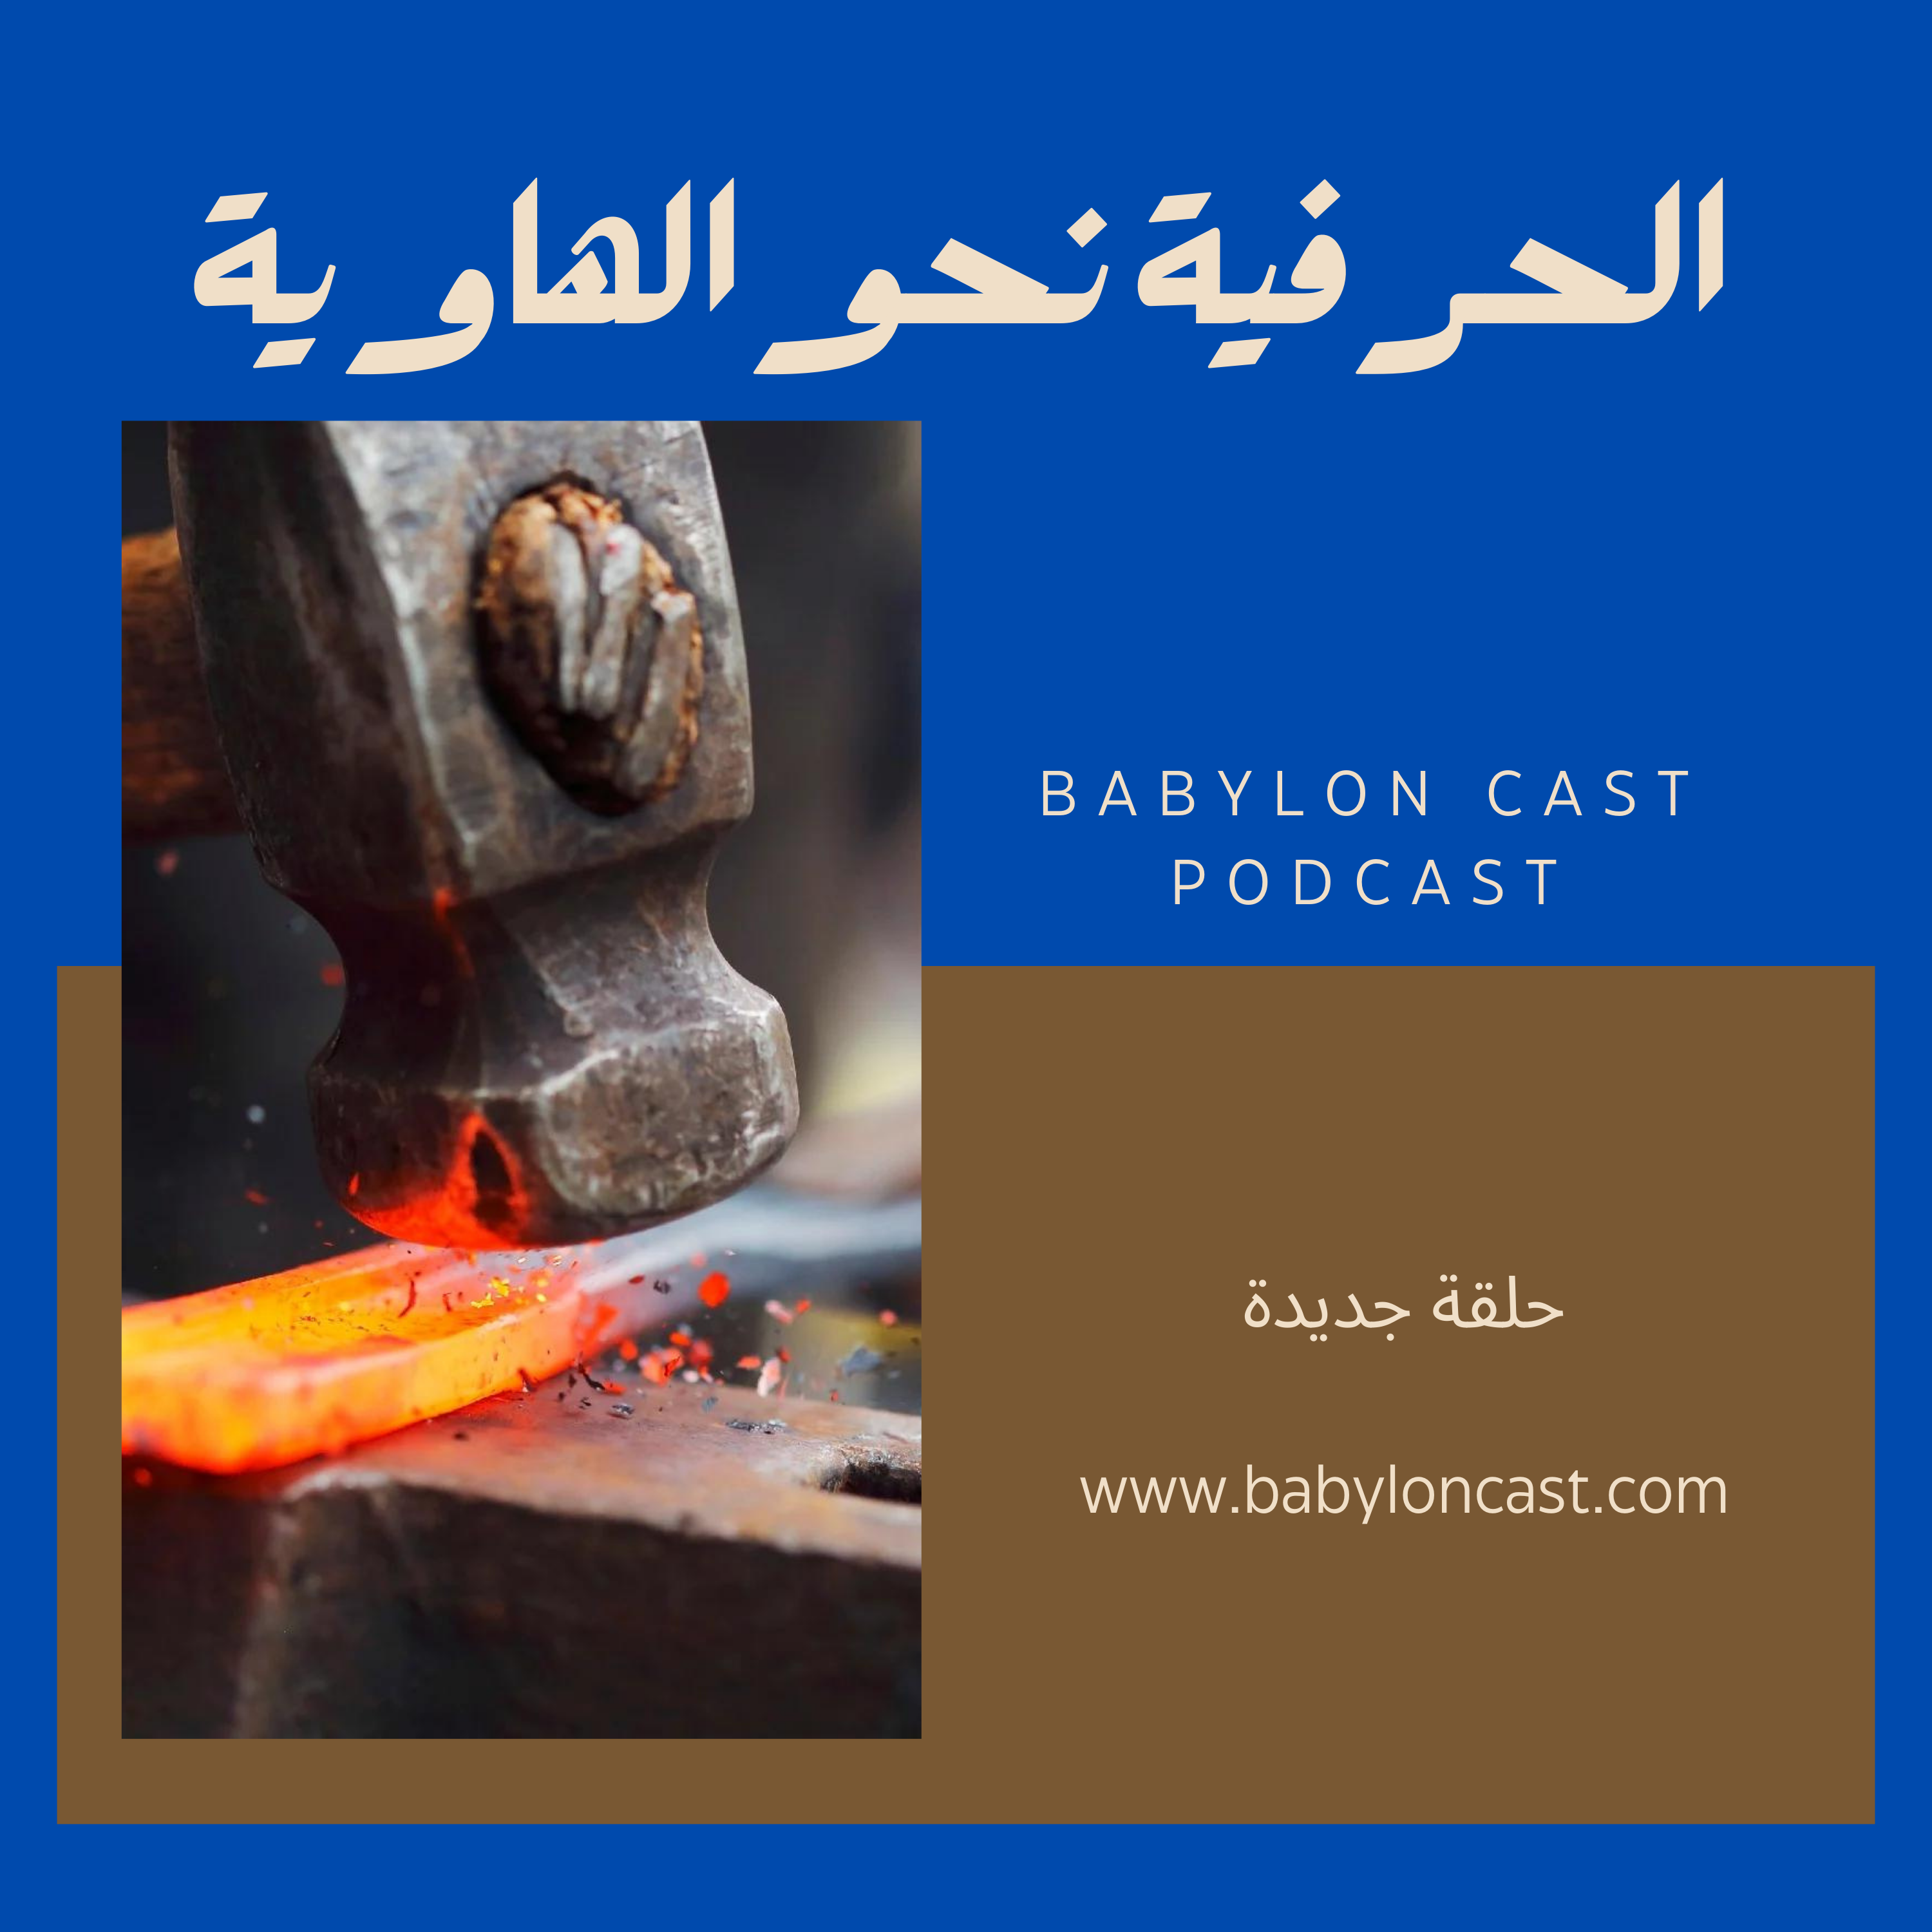 Babylon cast